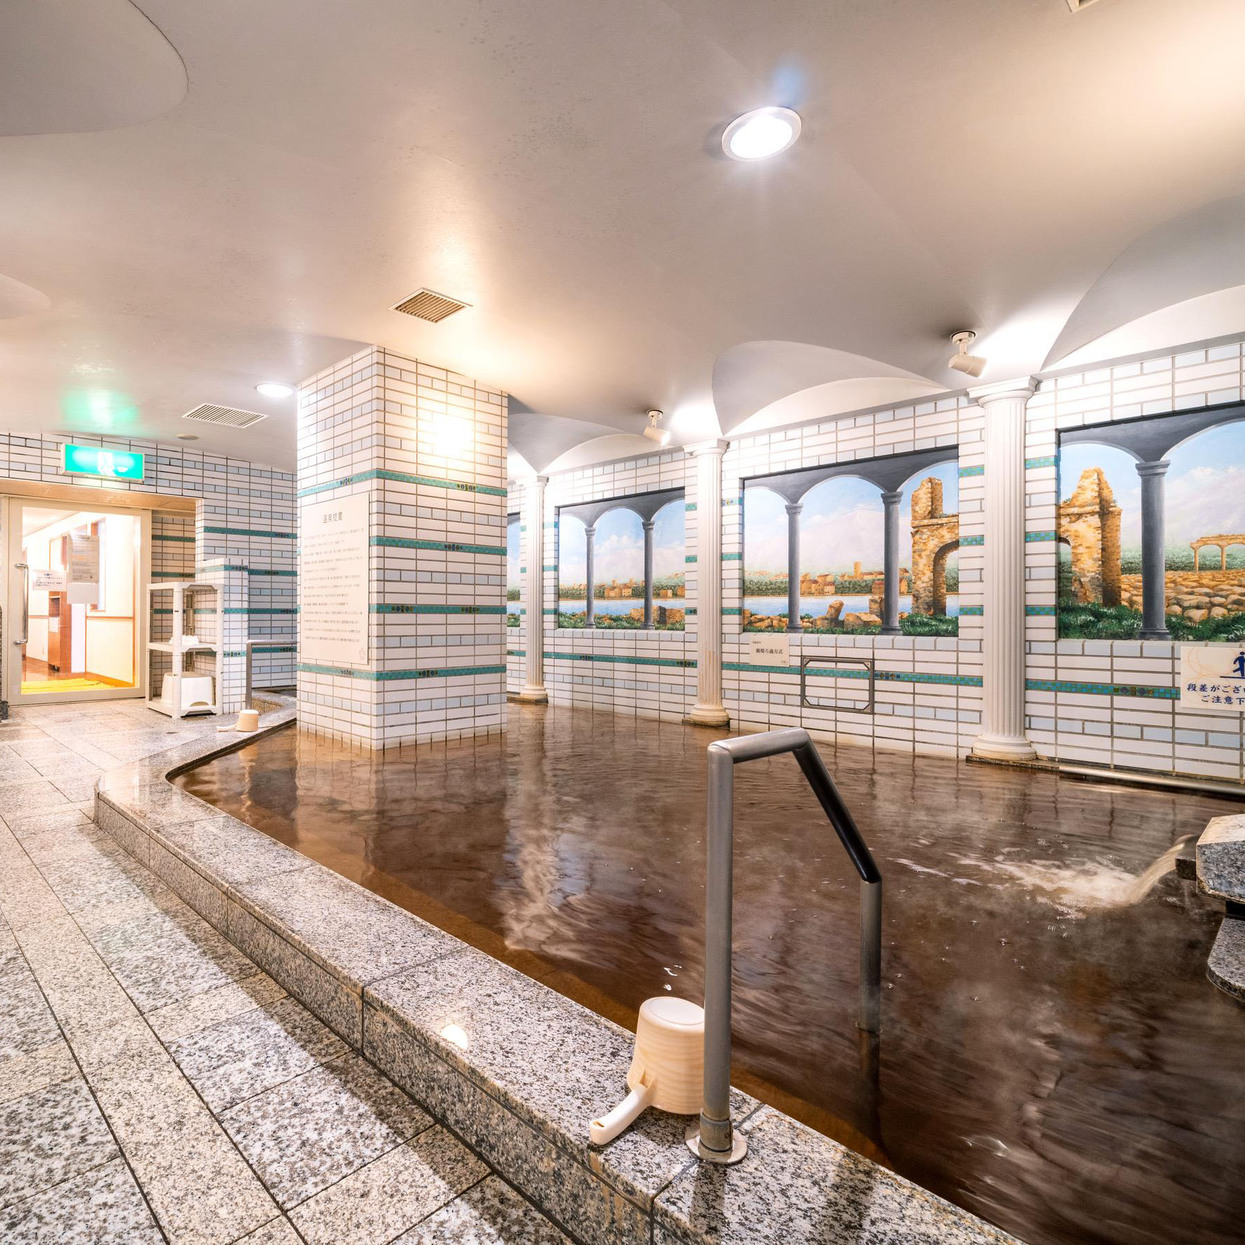 【大浴場内】大阪市内のホテルで唯一の本物の天然温泉